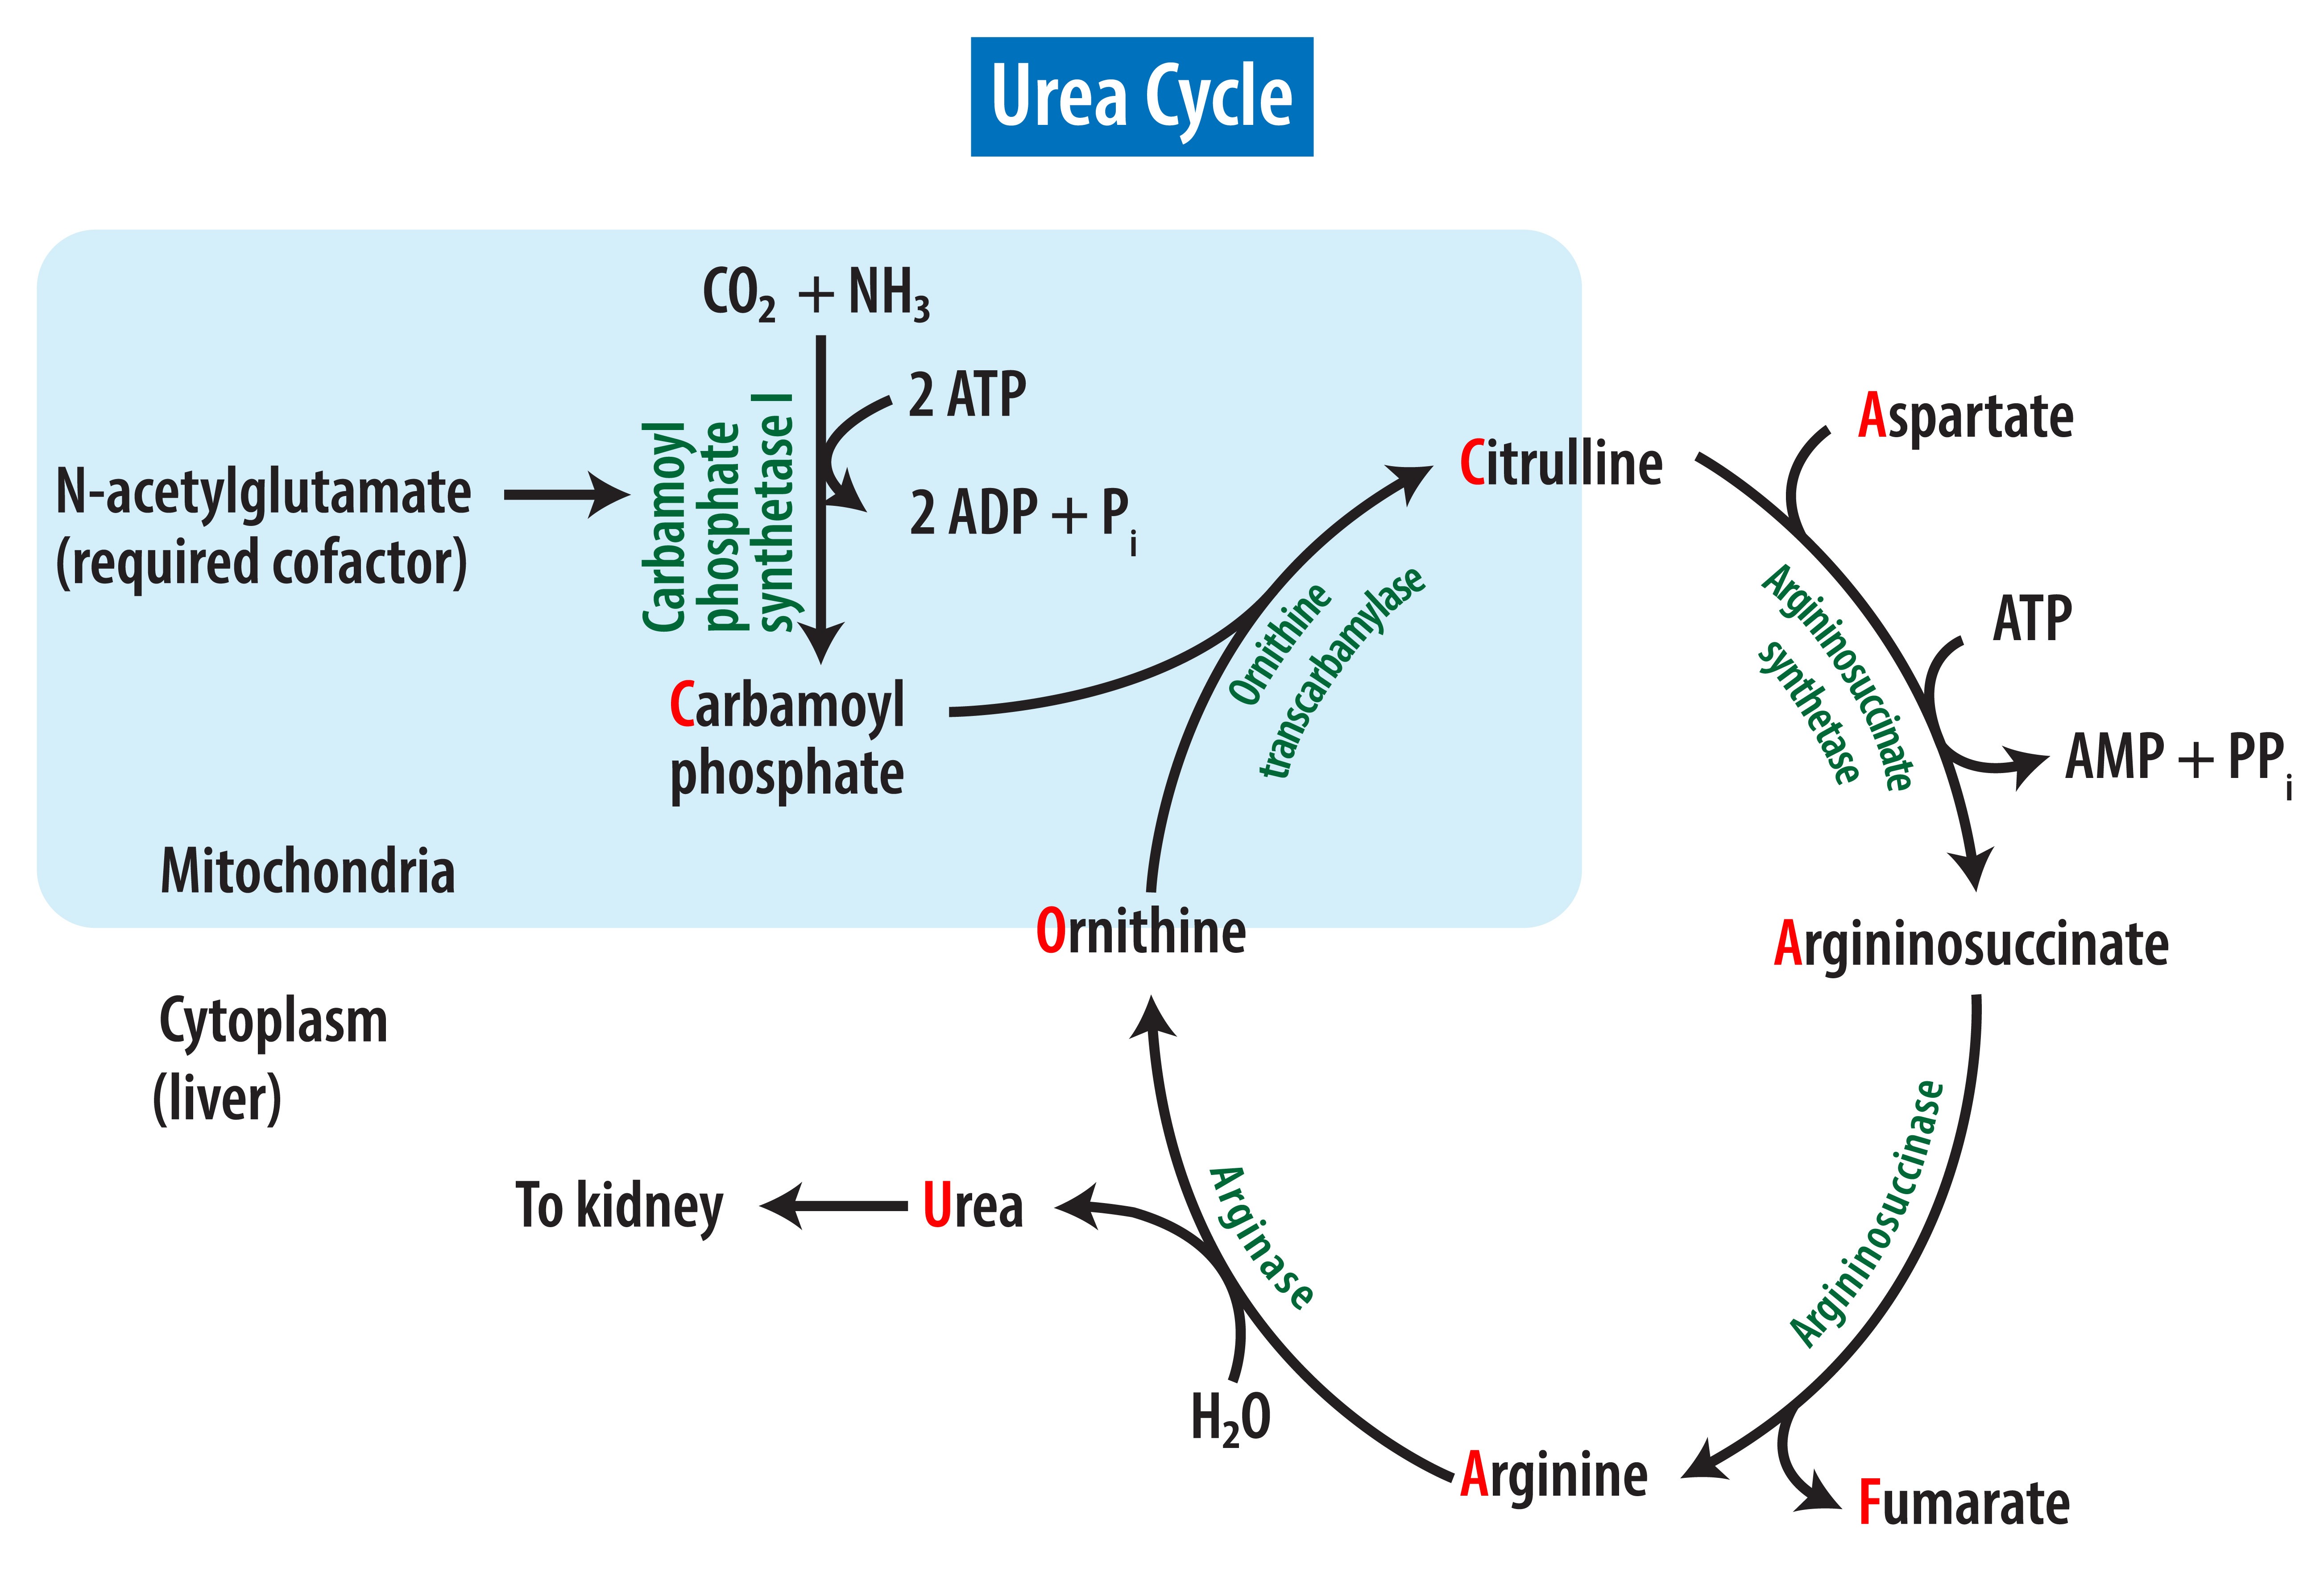 The urea cycle.